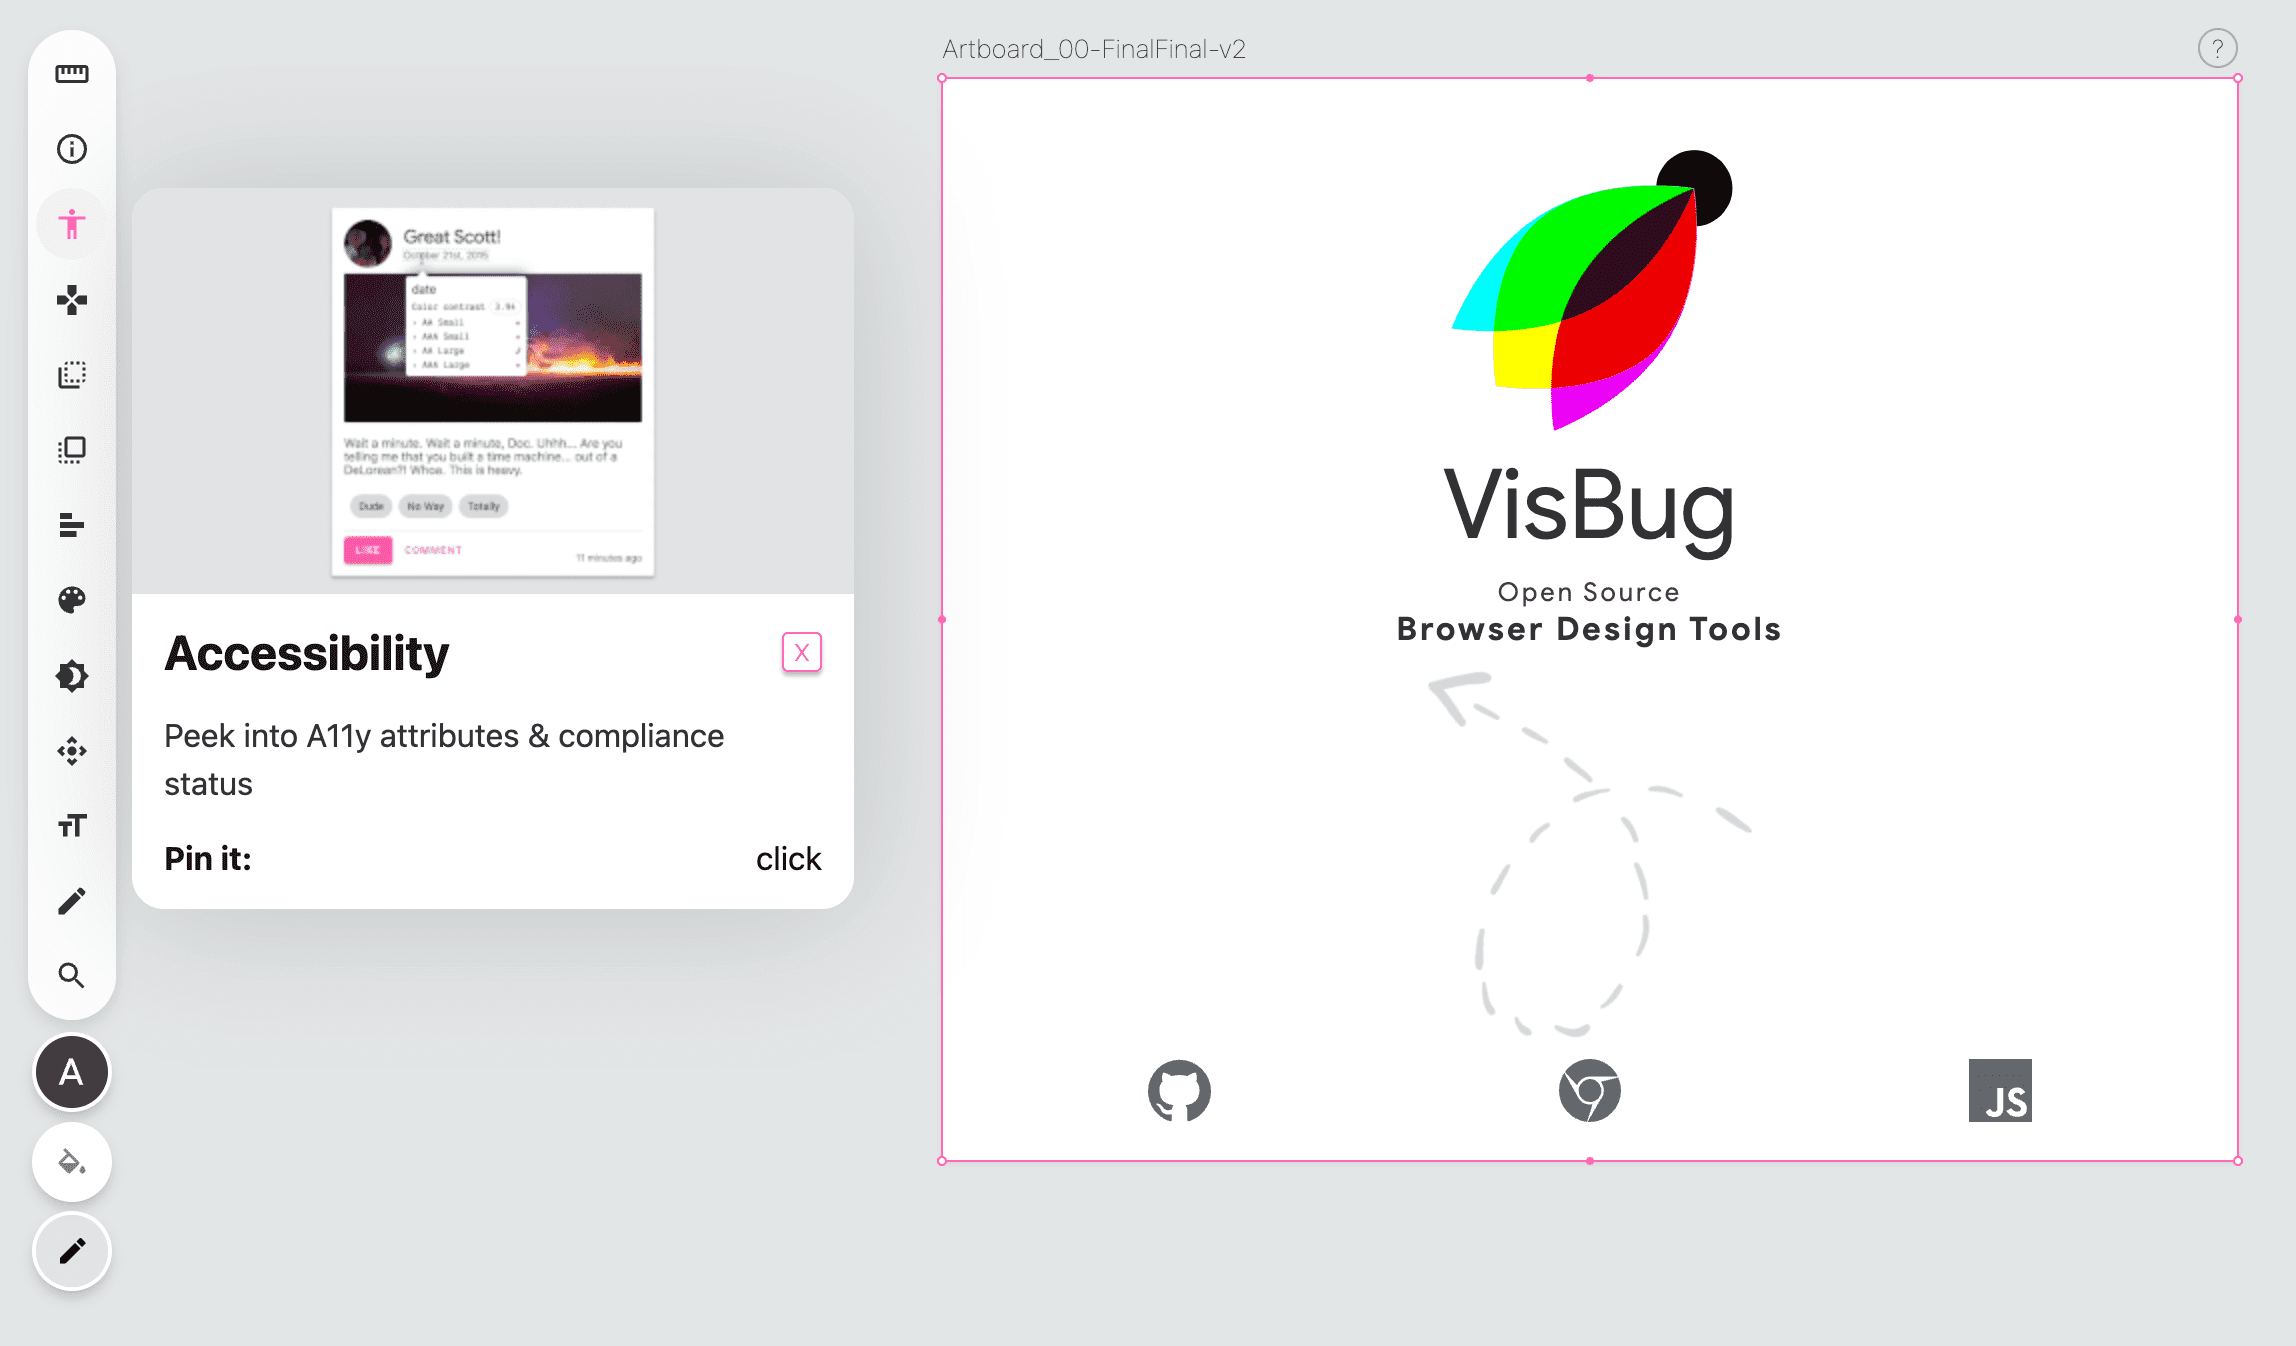 لقطة شاشة لشريط أدوات VisBug على الجانب الأيسر من صفحة فارغة، ويظهر رمز أداة تسهيل الاستخدام باللون الوردي وتظهر نافذة منبثقة تتضمّن تعليمات حول الأداة.